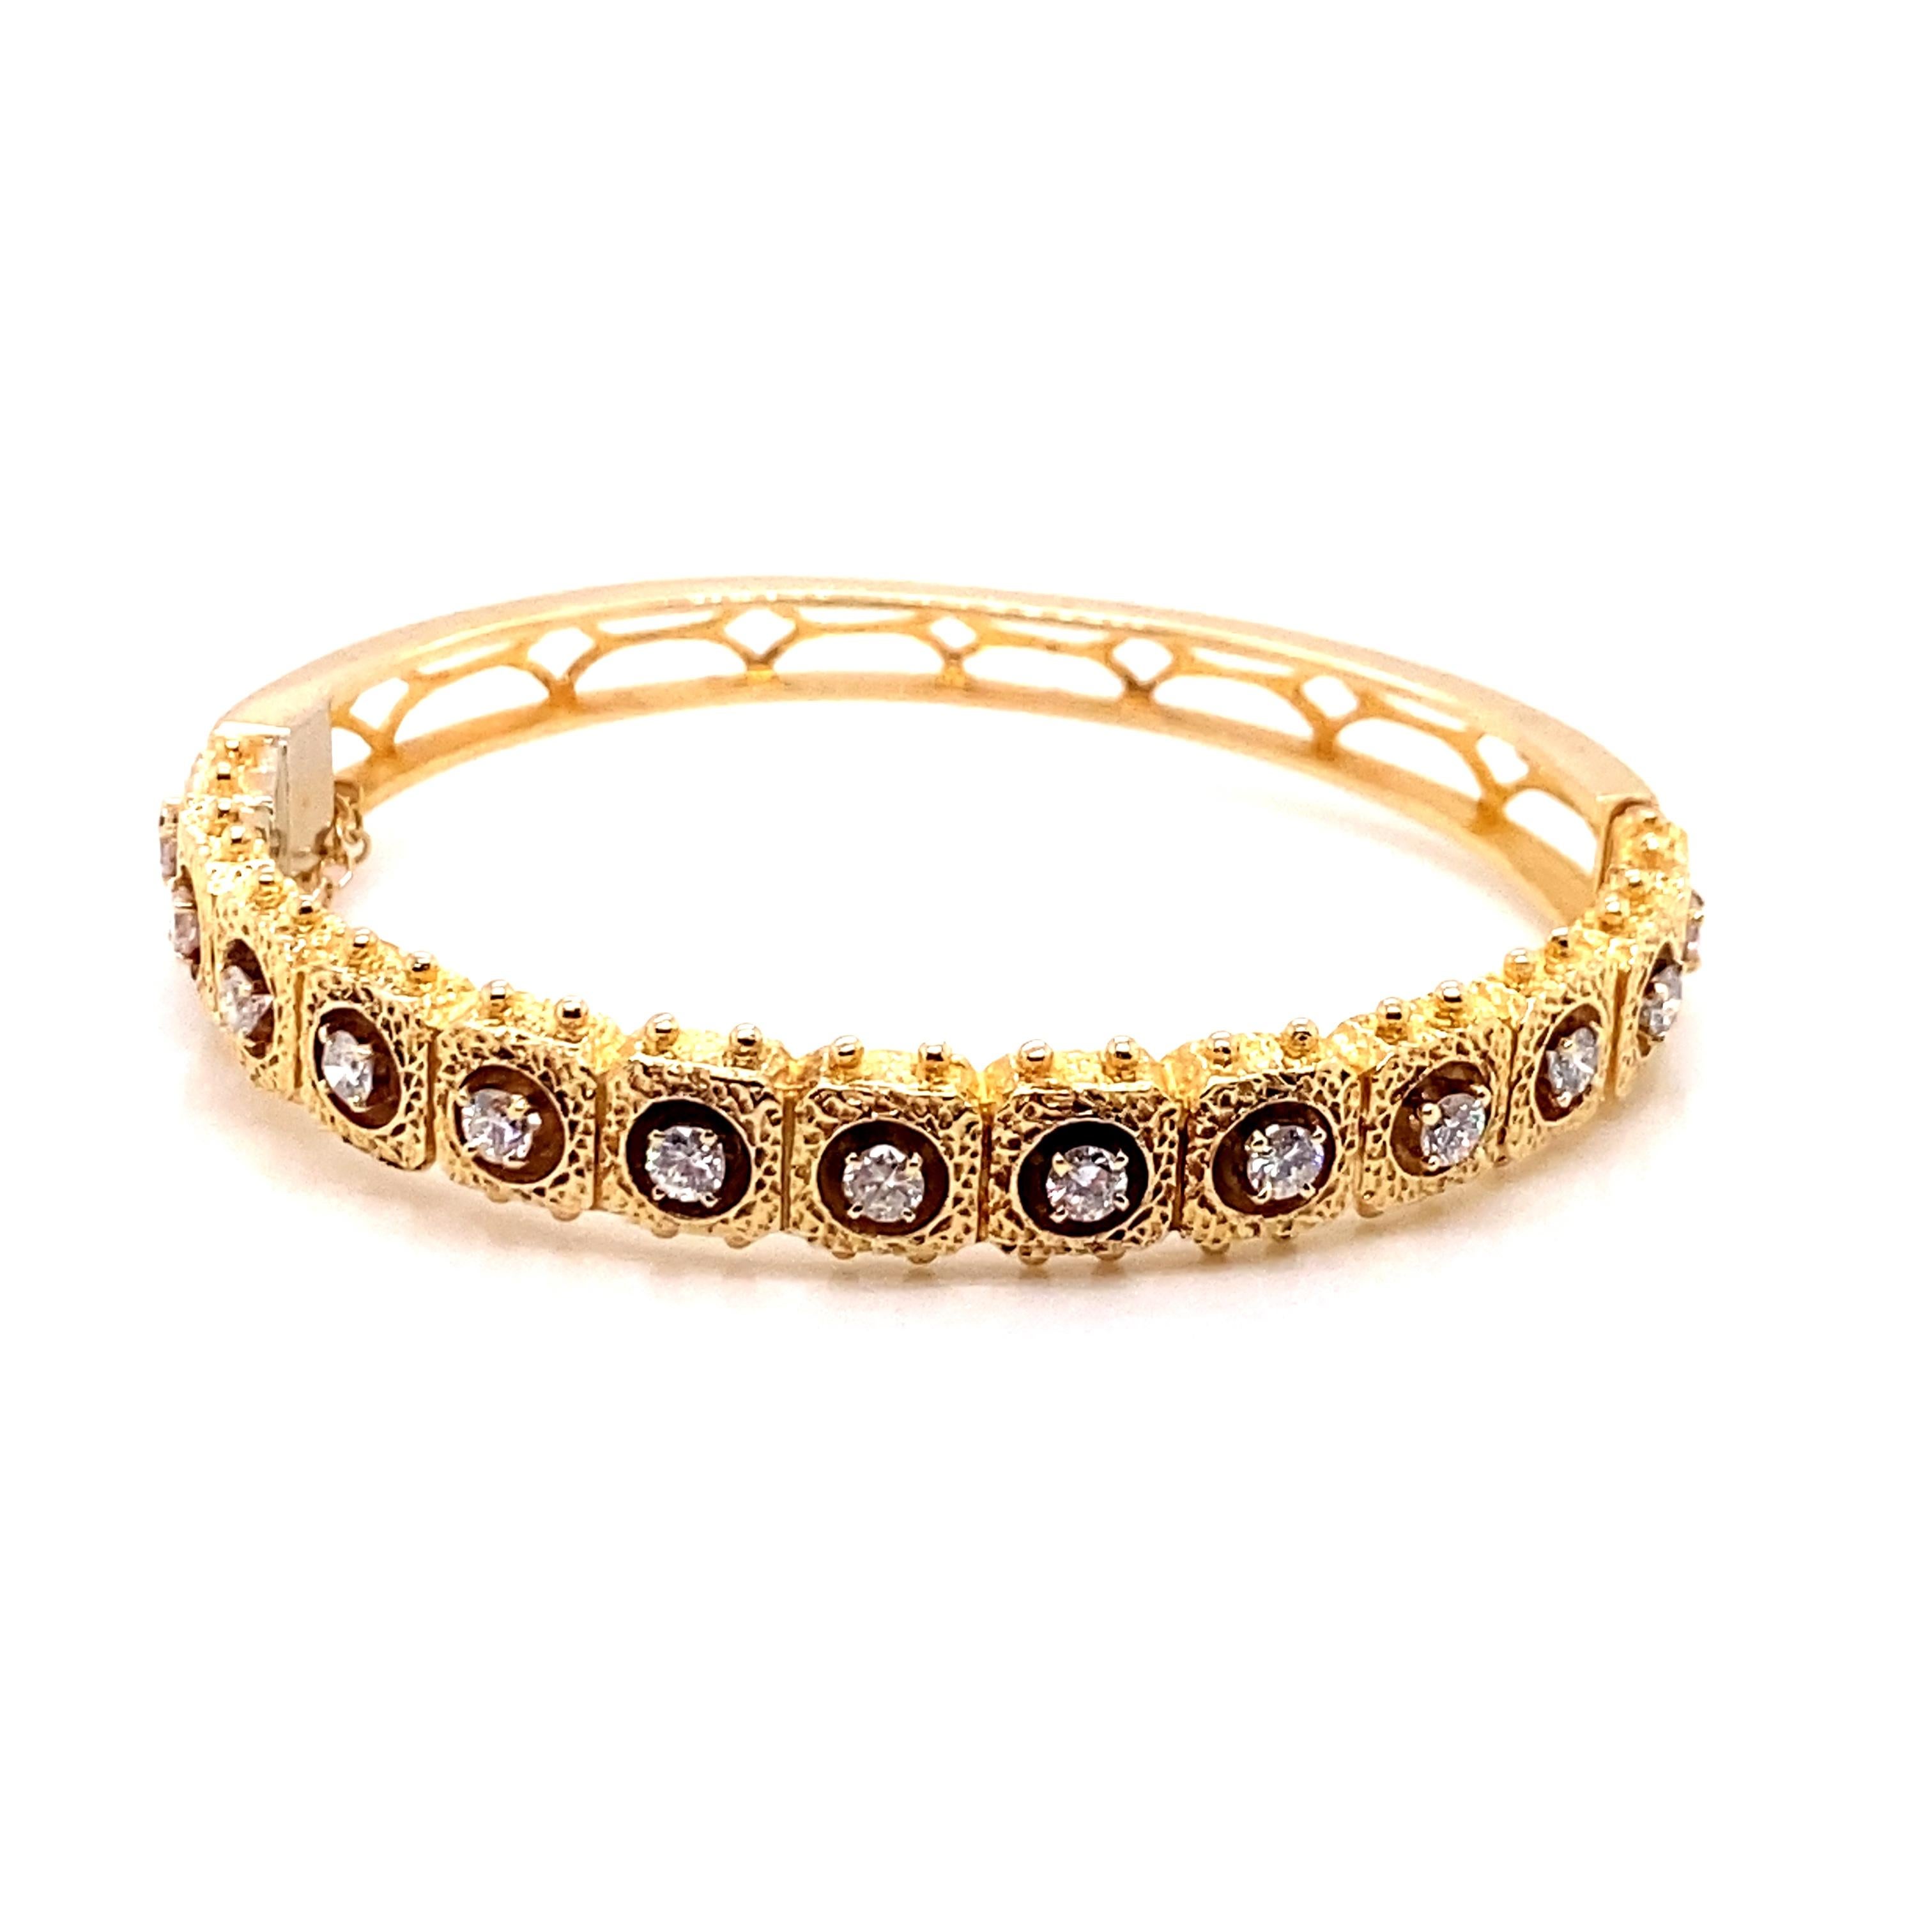 Vintage 1980's Bracelet en or jaune 14K avec diamants 1.05ct - Le bracelet contient 13 diamants ronds brillants qui sont sertis dans 4 têtes de prong avec un poids approximatif de 1.05ct. La qualité du diamant est G - H couleur SI clarté. La largeur